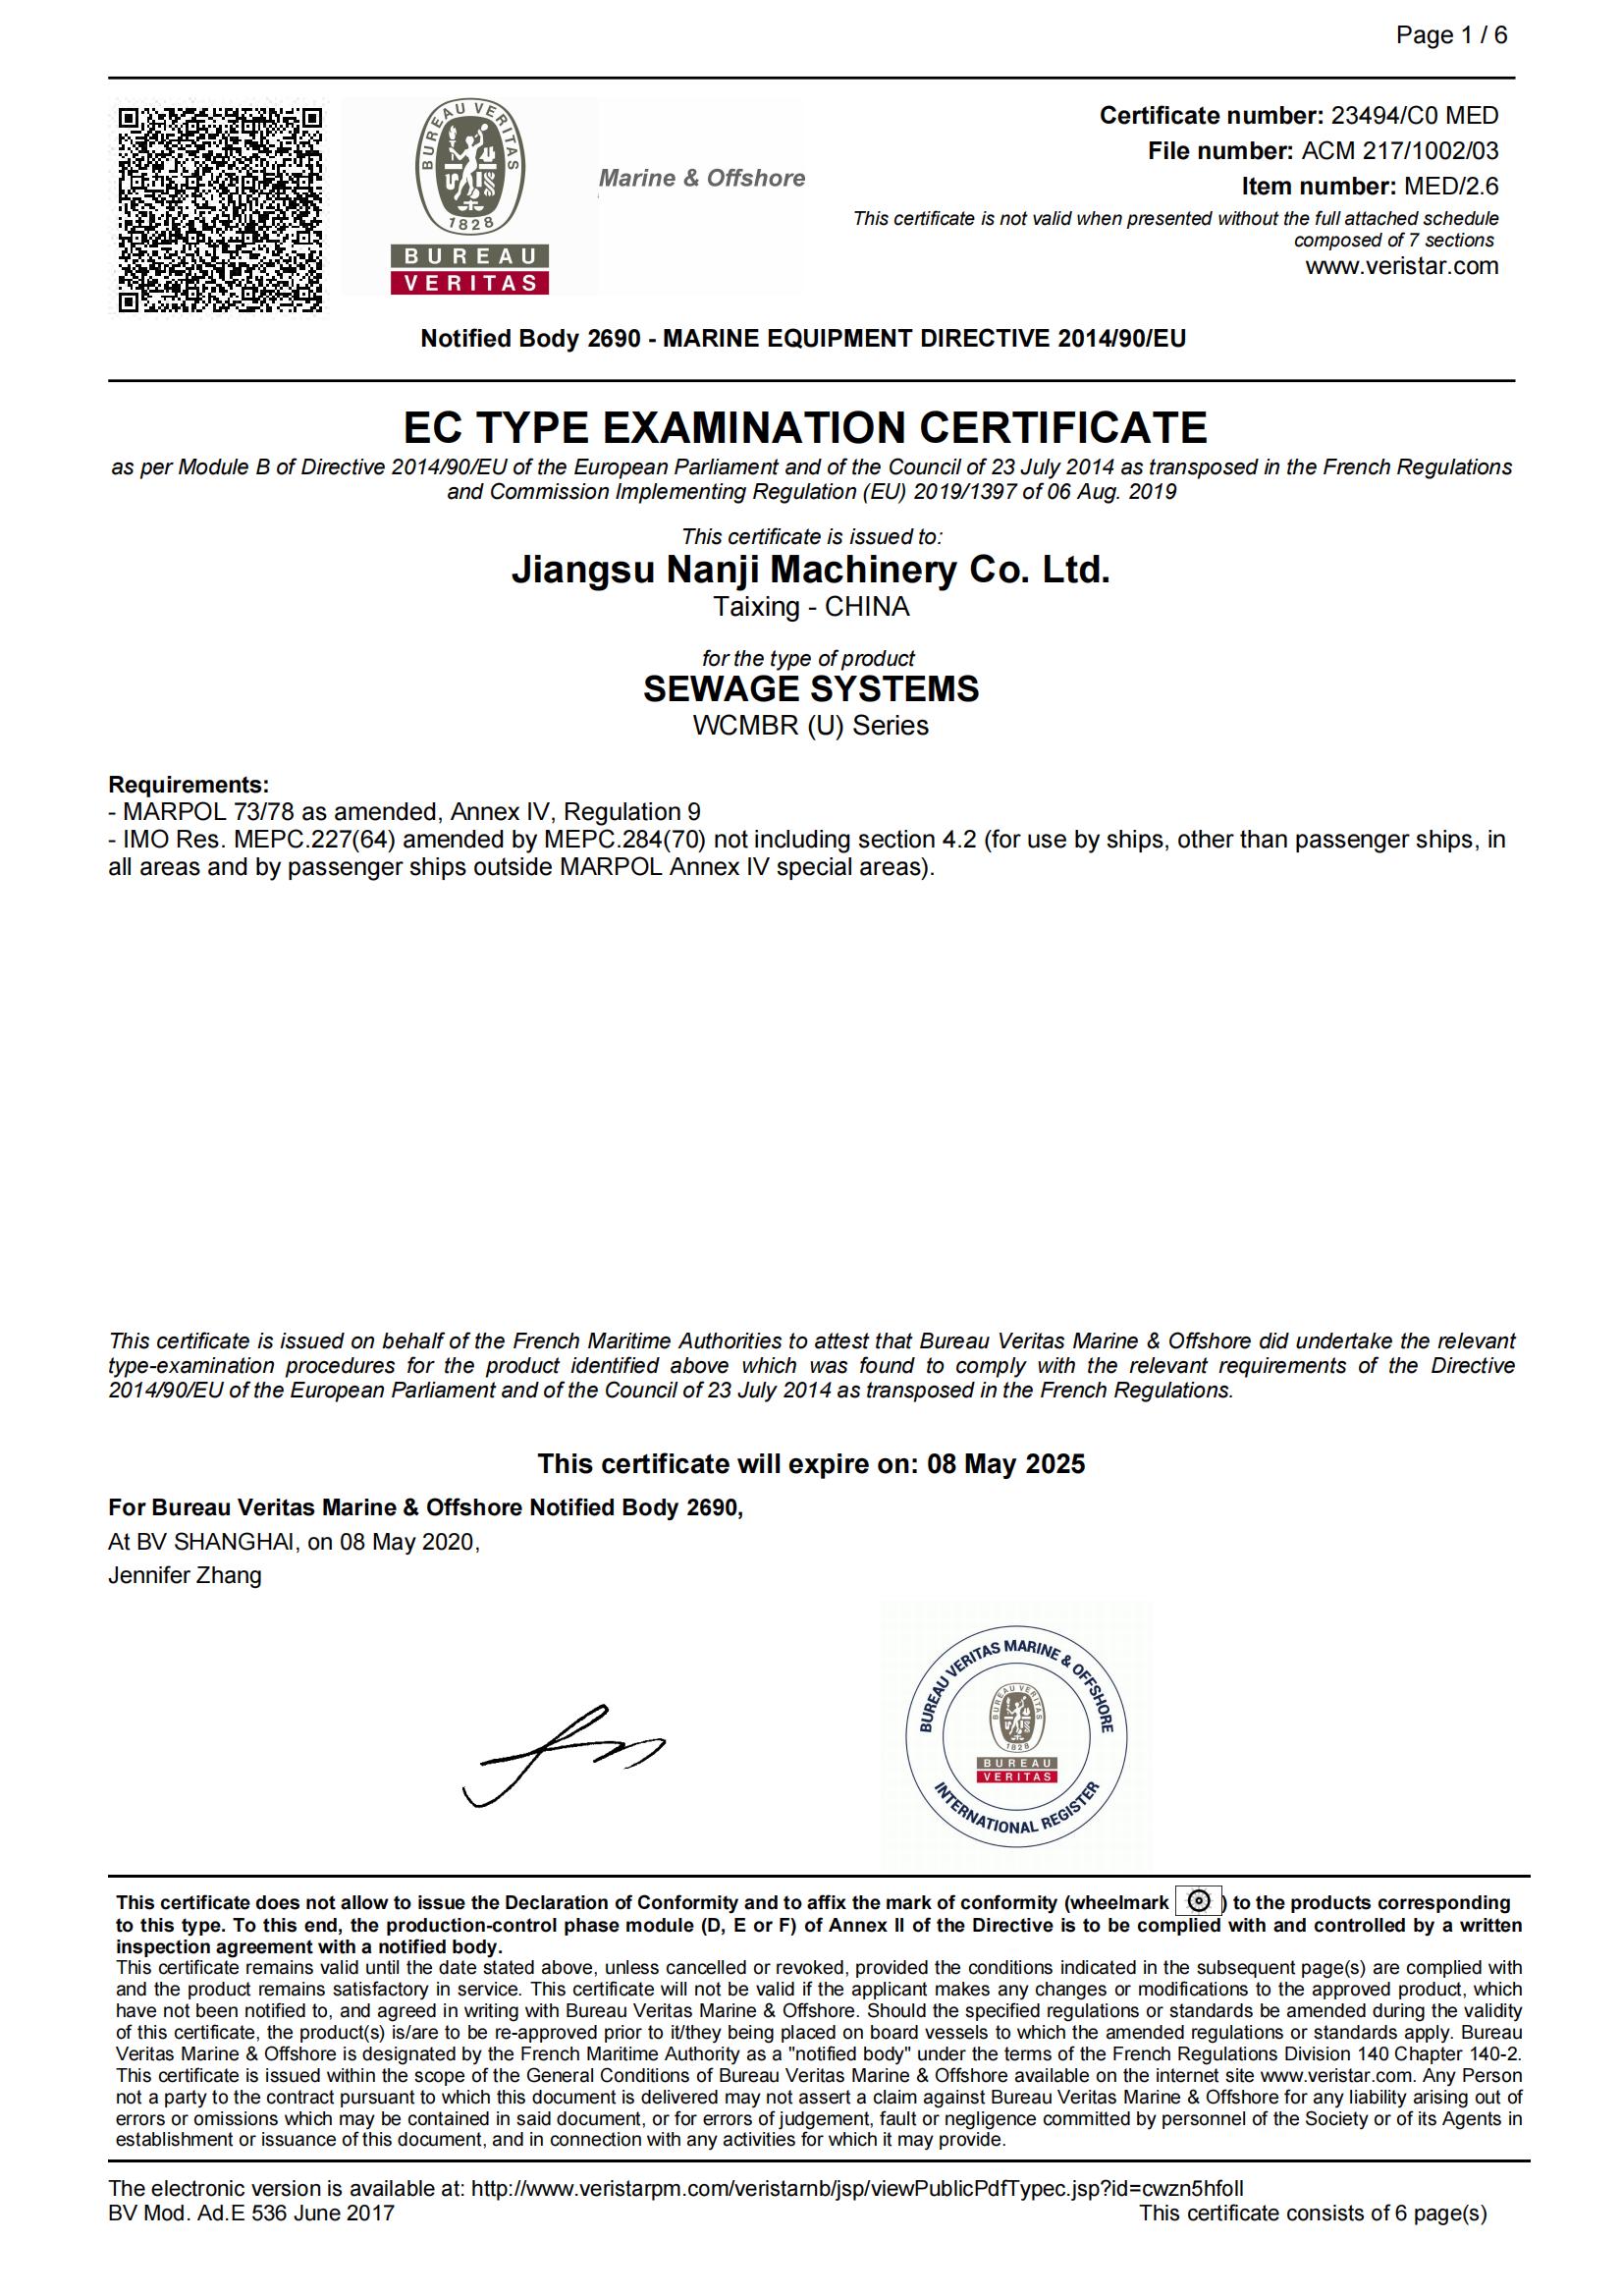 EC生活污水处理装置型式认可证书